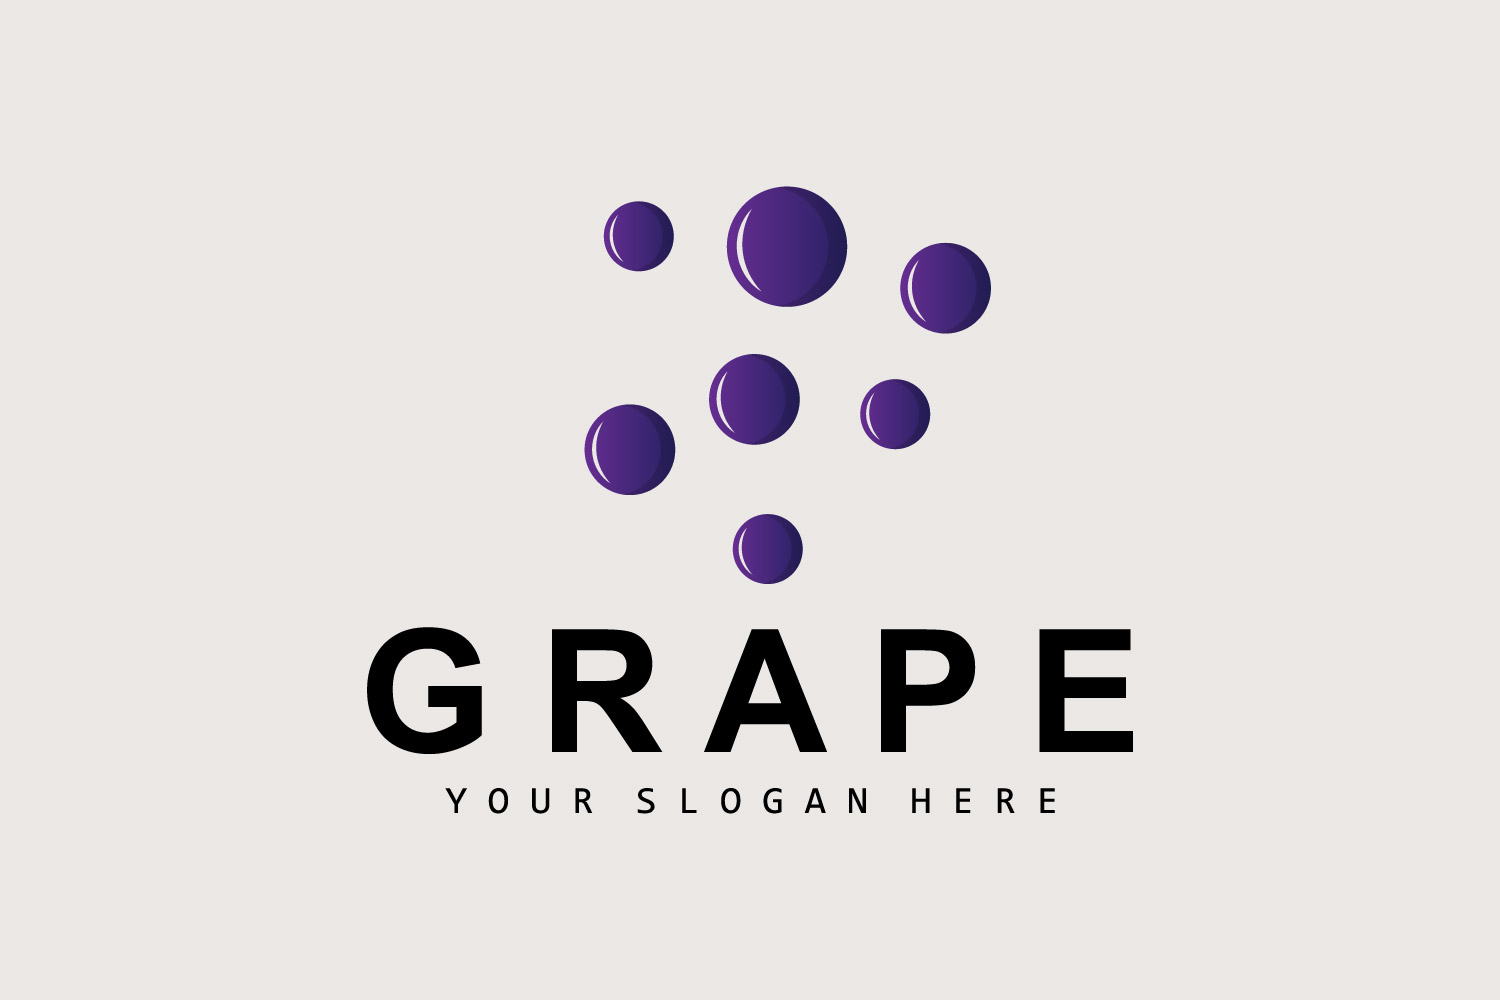 Grape Fruit Logo Style Fruit Design V11